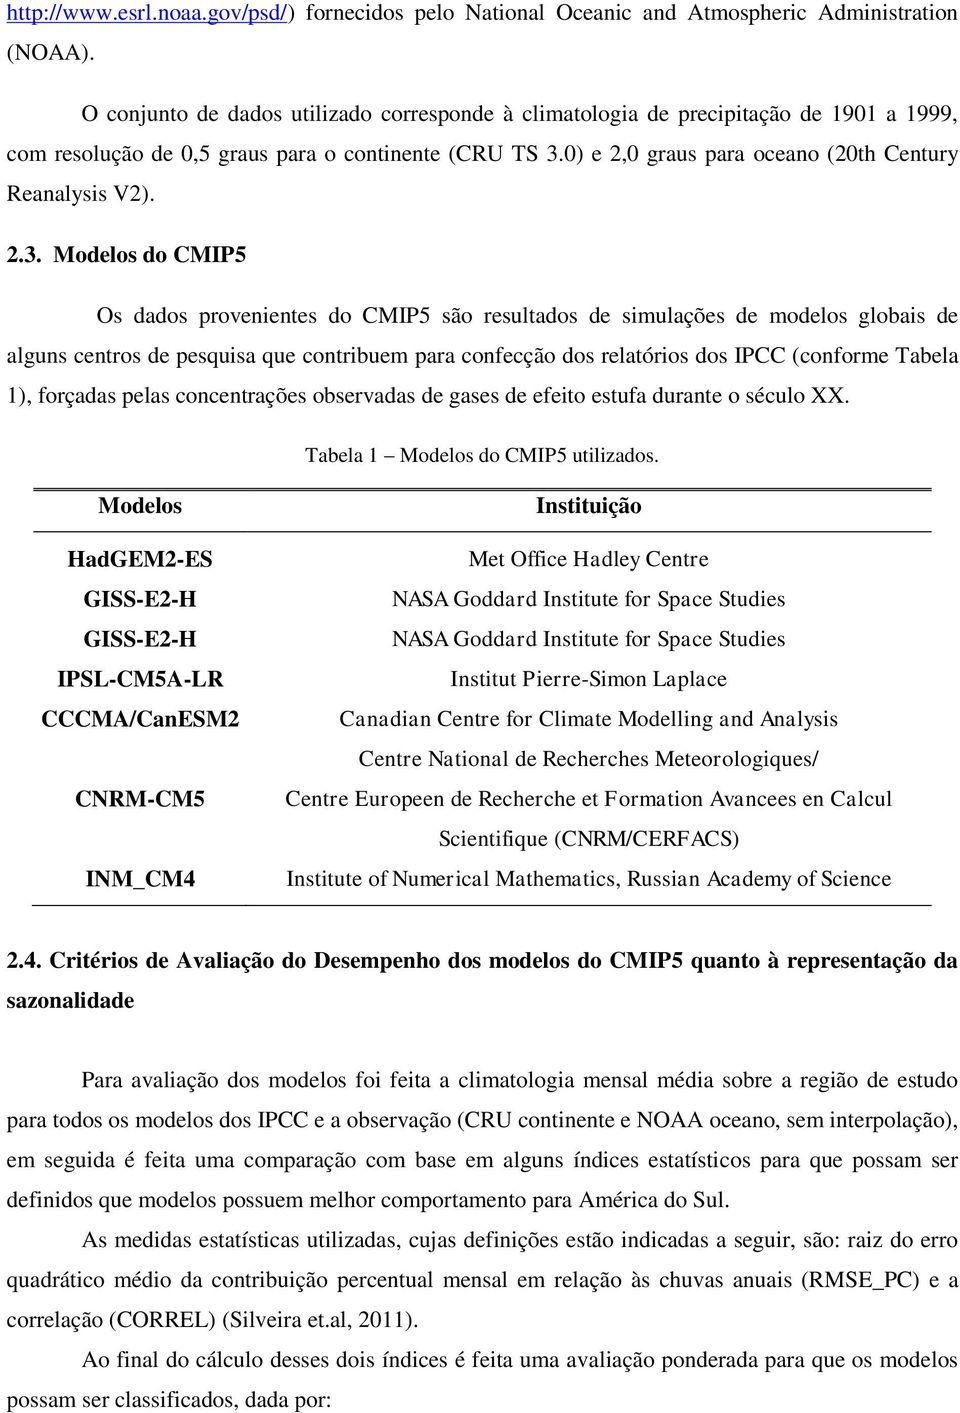 2.3. Modelos do CMIP5 Os dados provenientes do CMIP5 são resultados de simulações de modelos globais de alguns centros de pesquisa que contribuem para confecção dos relatórios dos IPCC (conforme